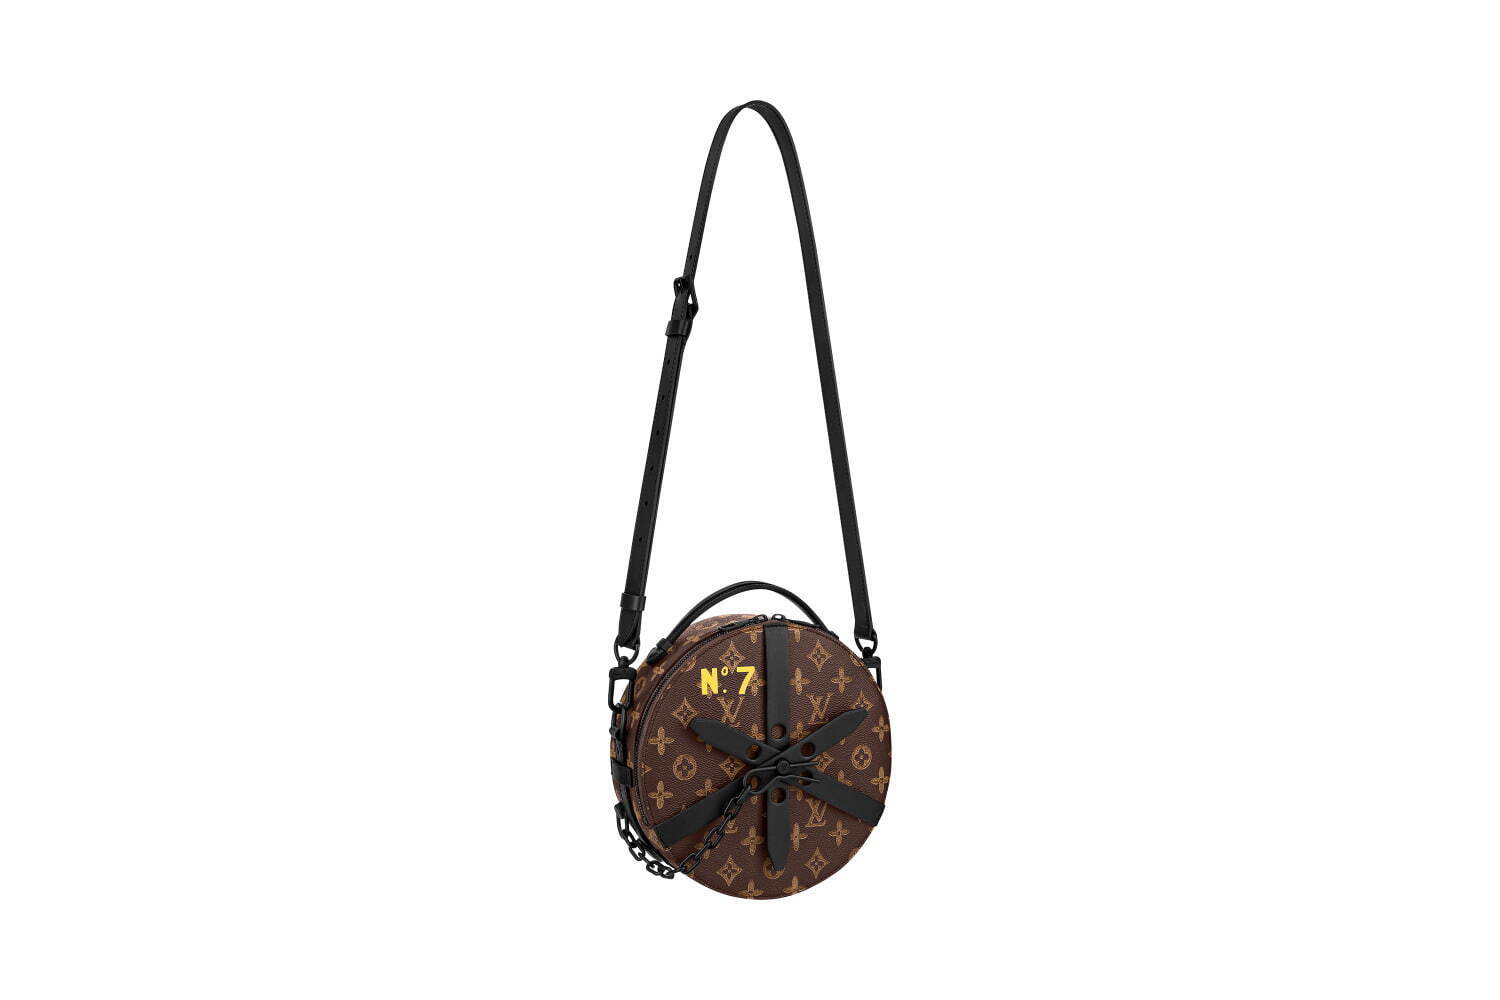 〈ルイ・ヴィトン〉「N°7」ロゴの丸型革製ミニショルダーバッグ